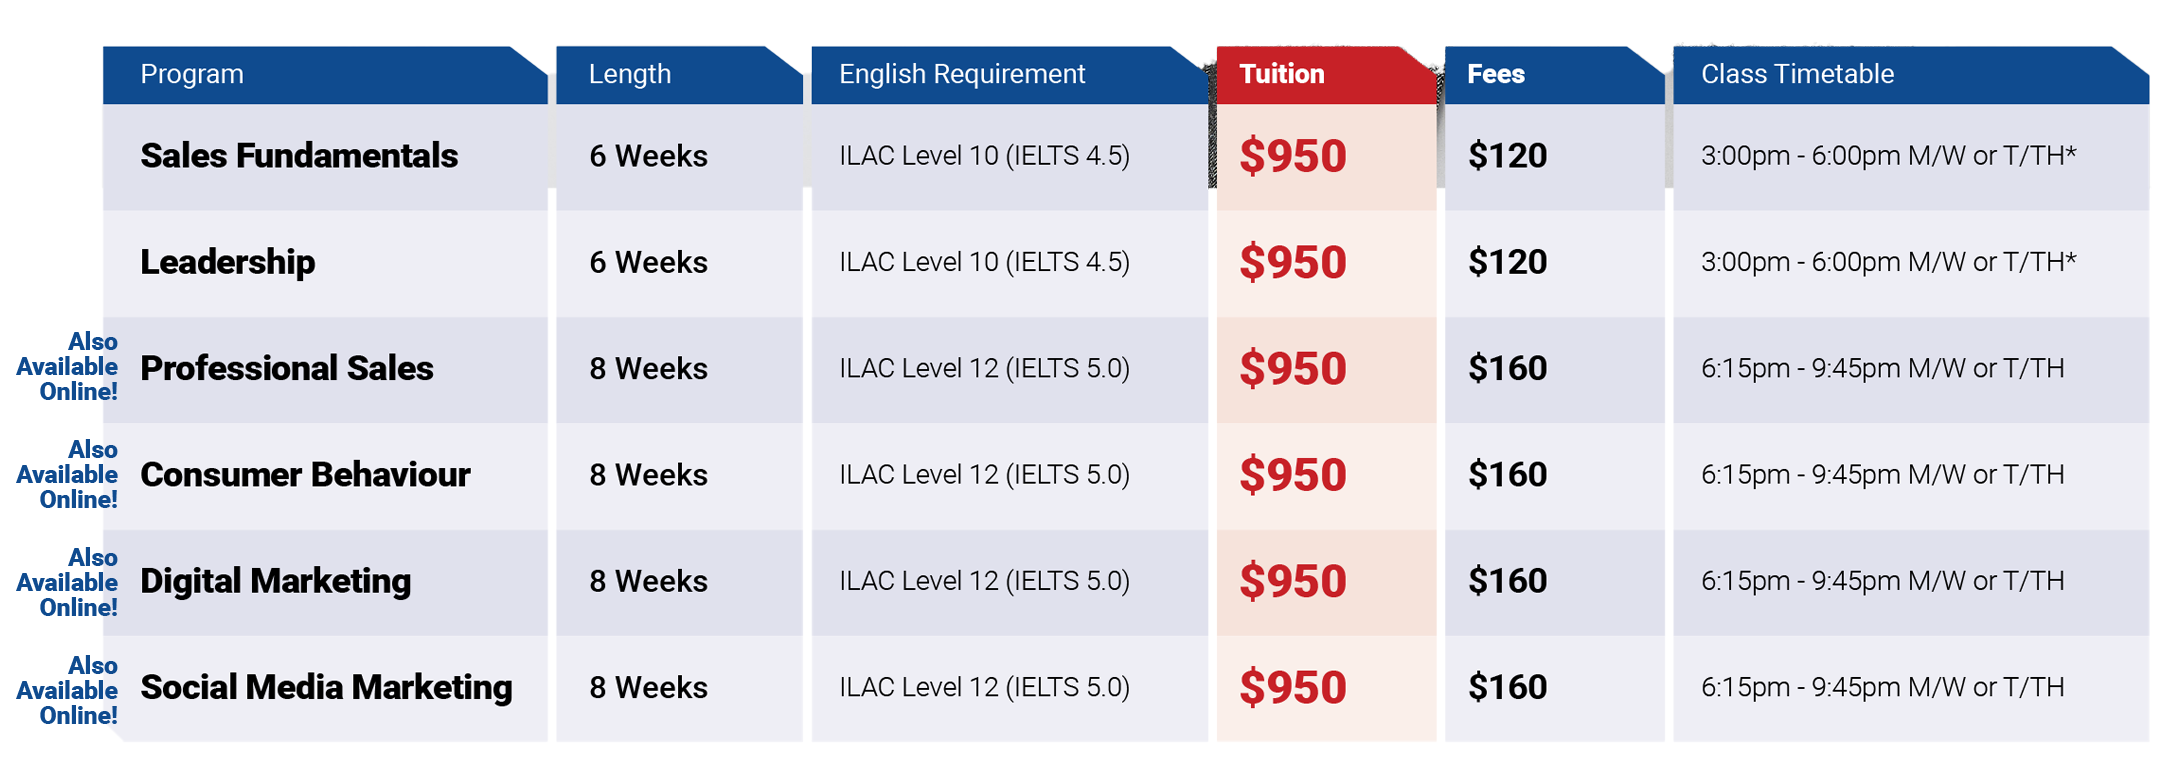 2024 加拿大 ILAC 國際語言學院 最新優惠價- 溫哥